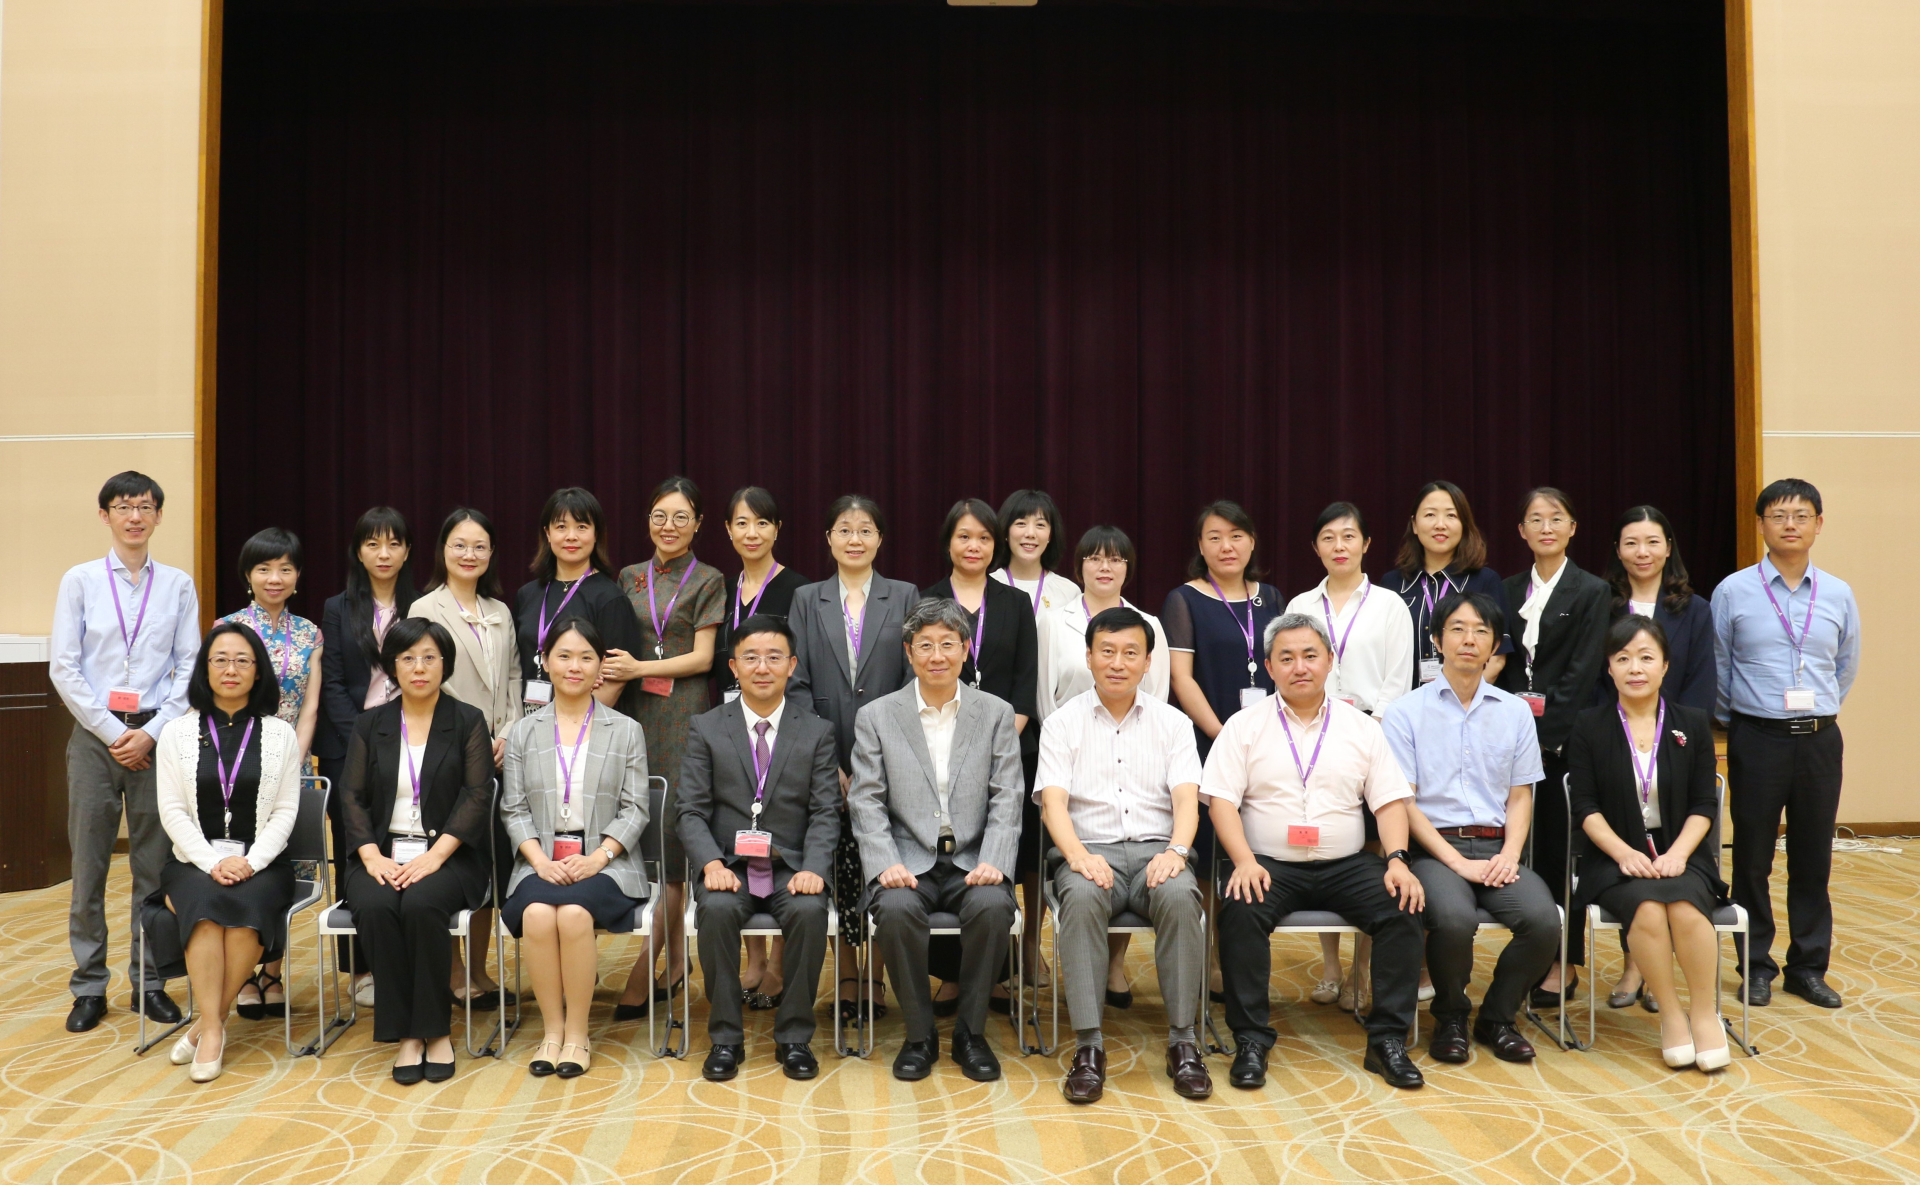 修了式にて笹川平和財団関係者と23名の第一期生